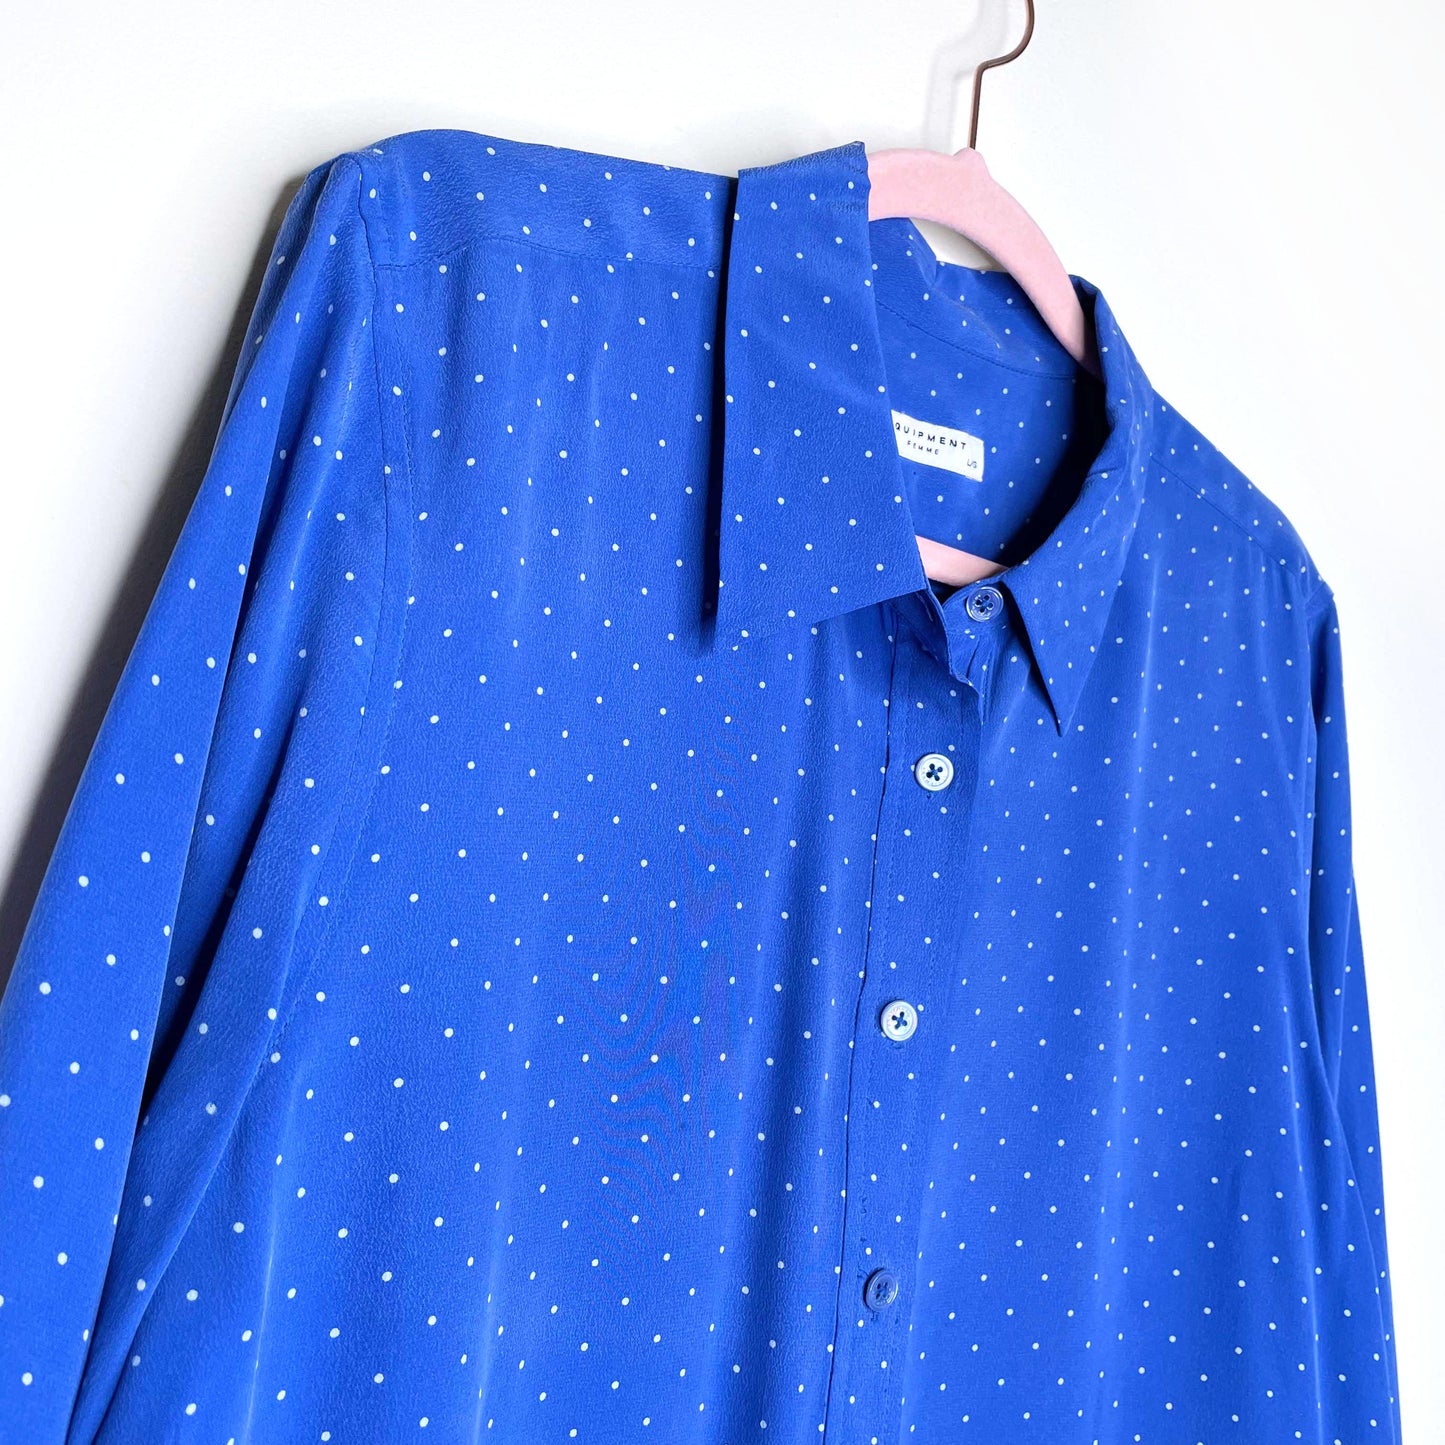 equipment femme blue silk polka dot shirt dress - size large